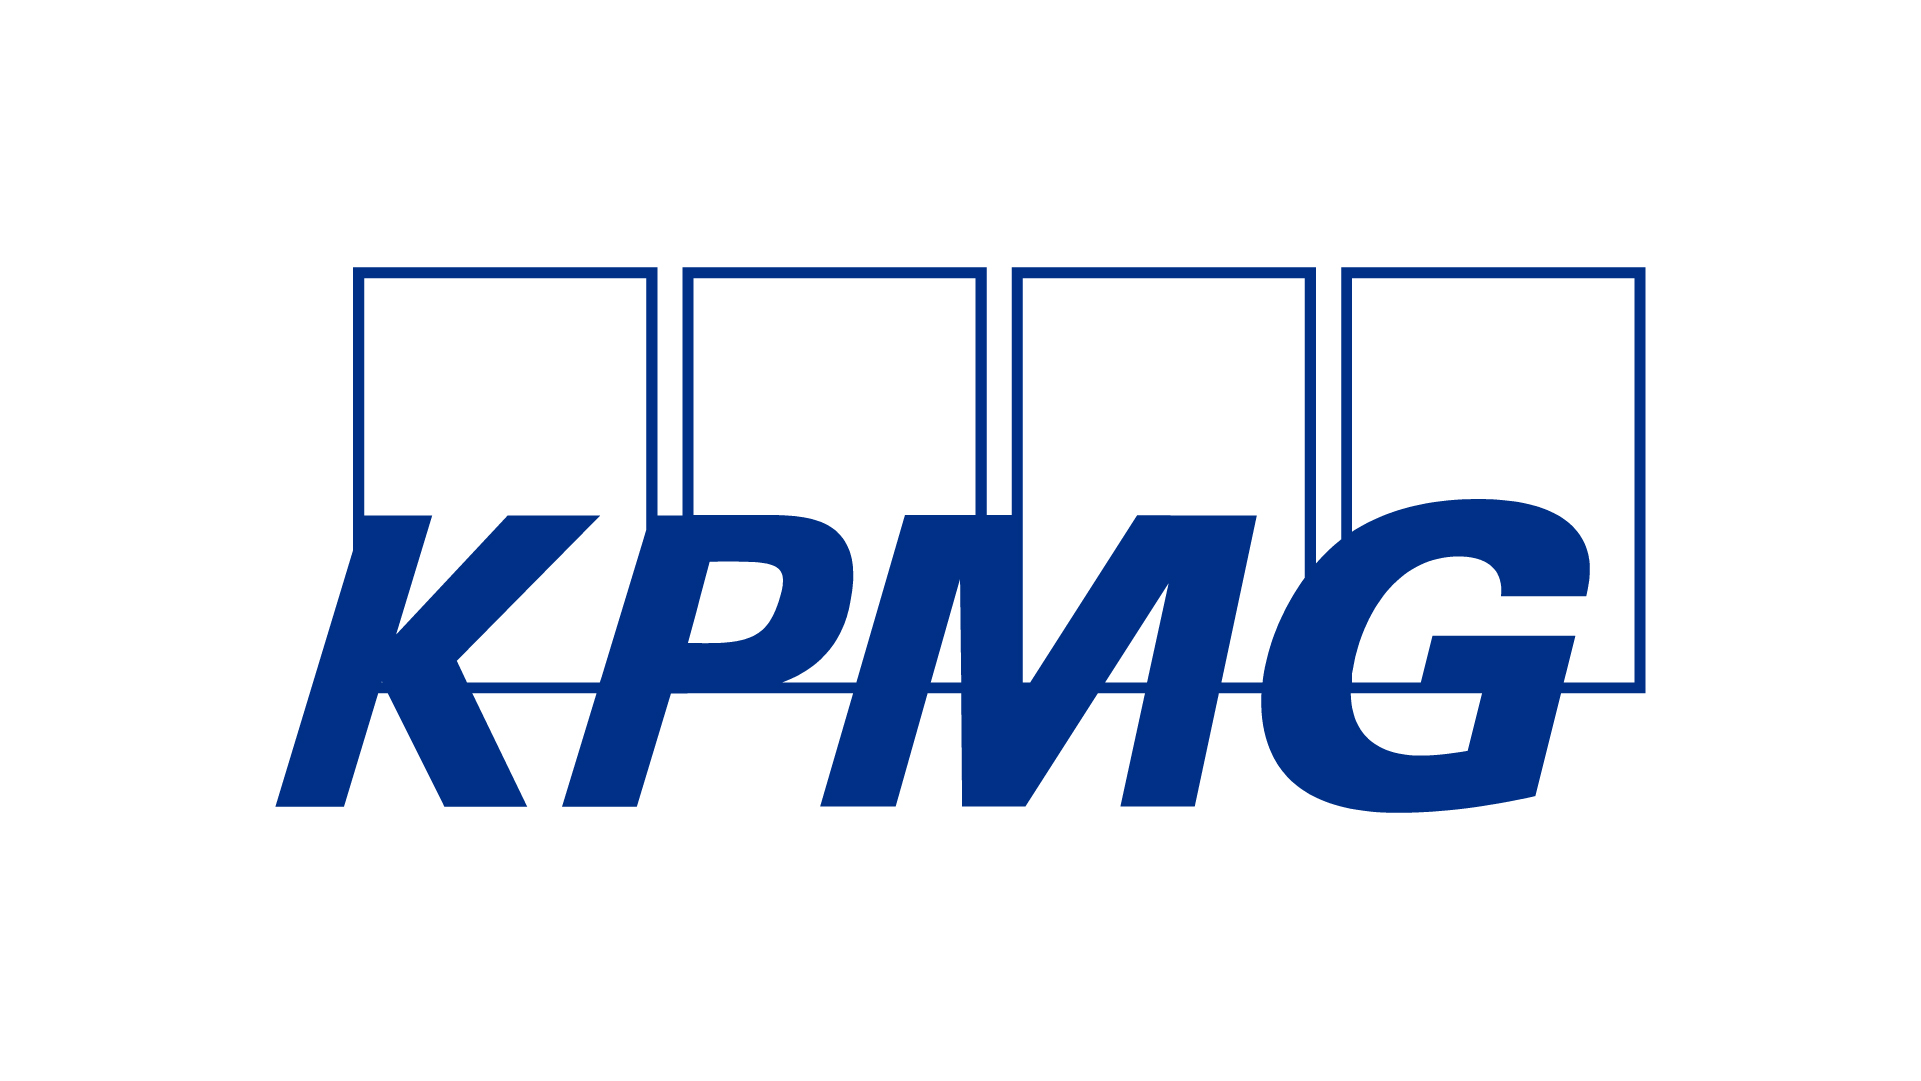 KPMG、Microsoftとの提携強化で20億ドルをAIへ投資―潜在的な成長機会は120億ドル以上に